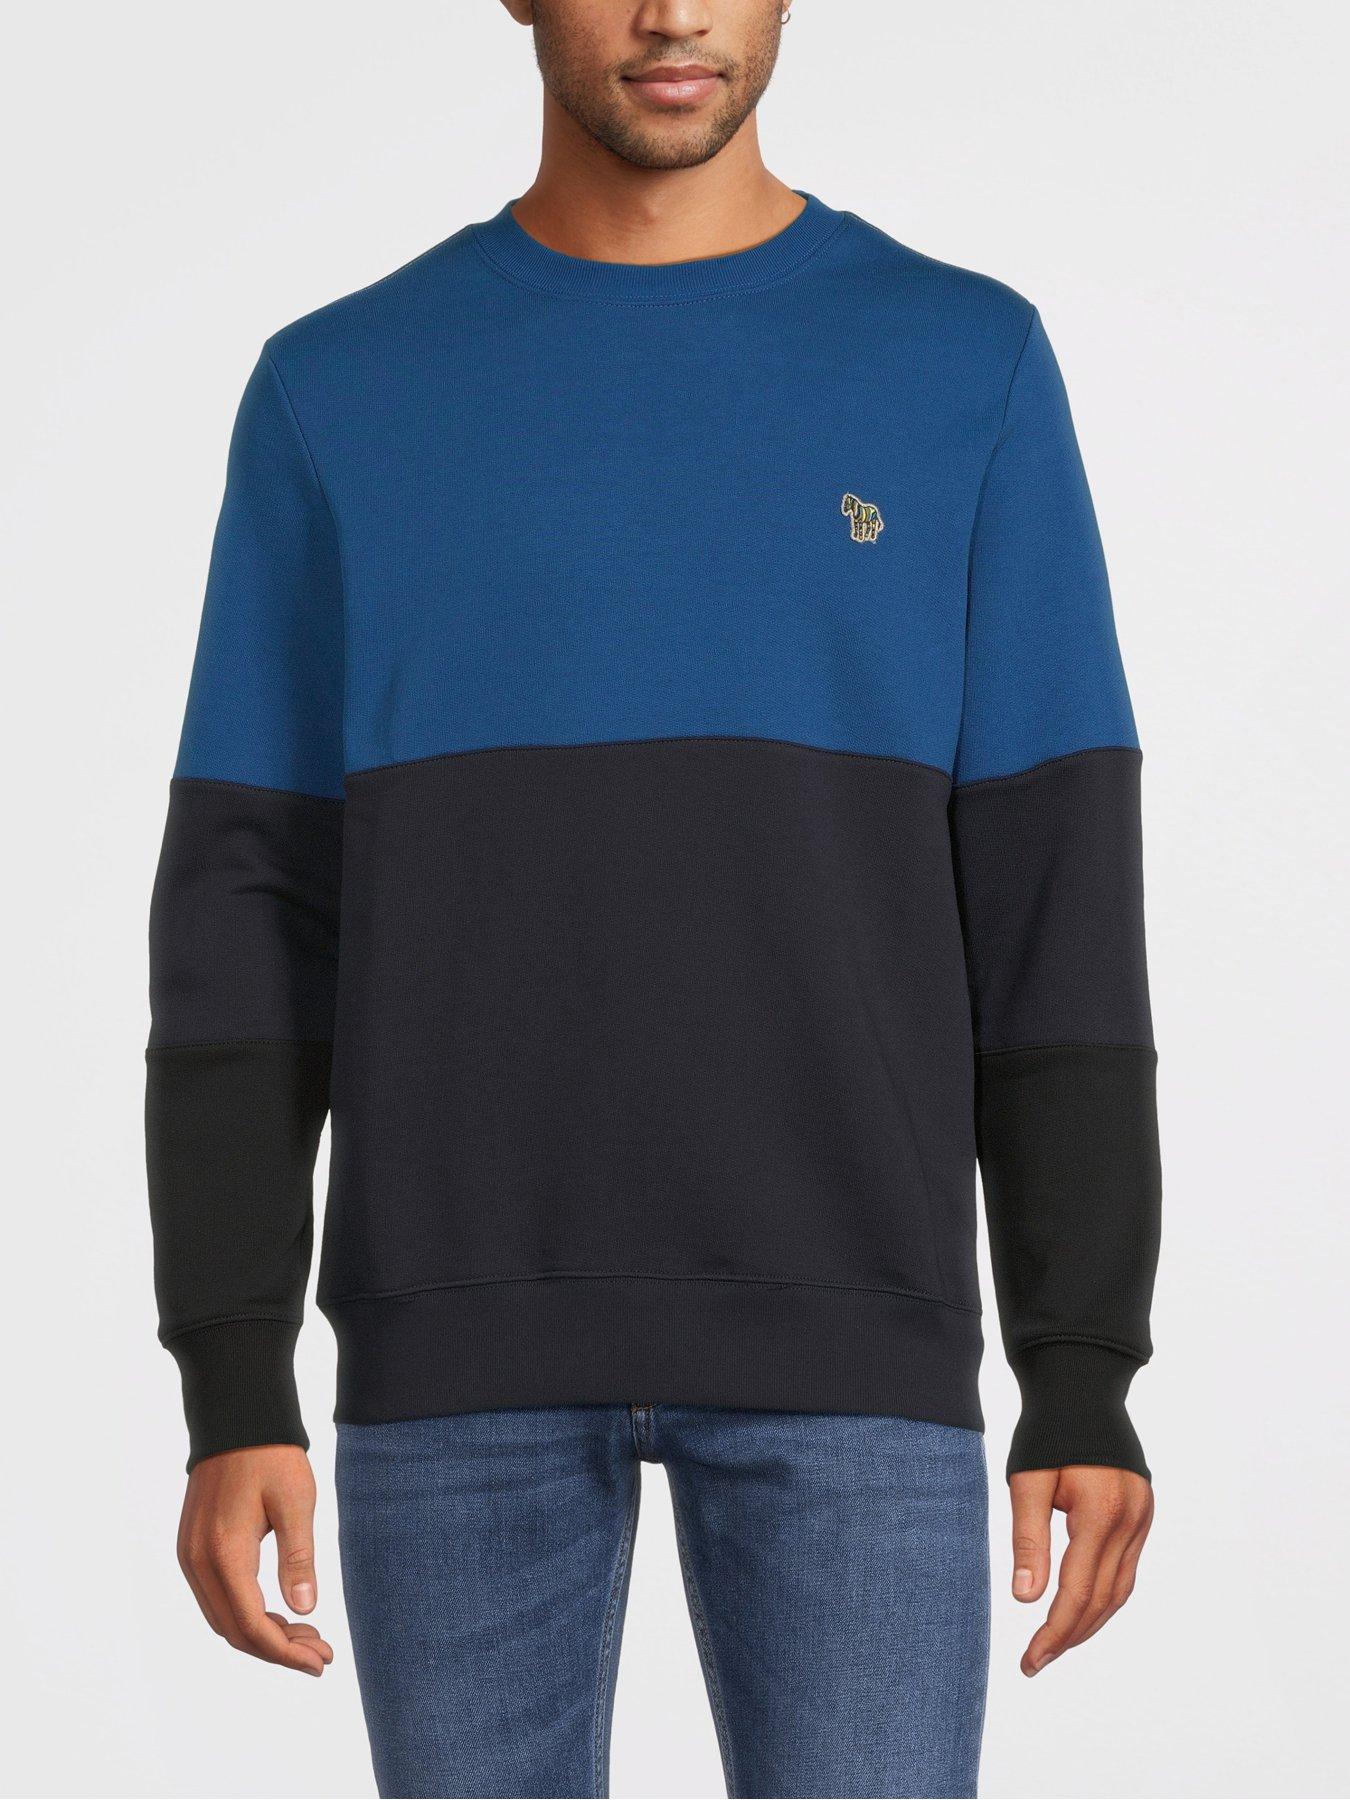 Colourblock Zebra Sweatshirt - Blue